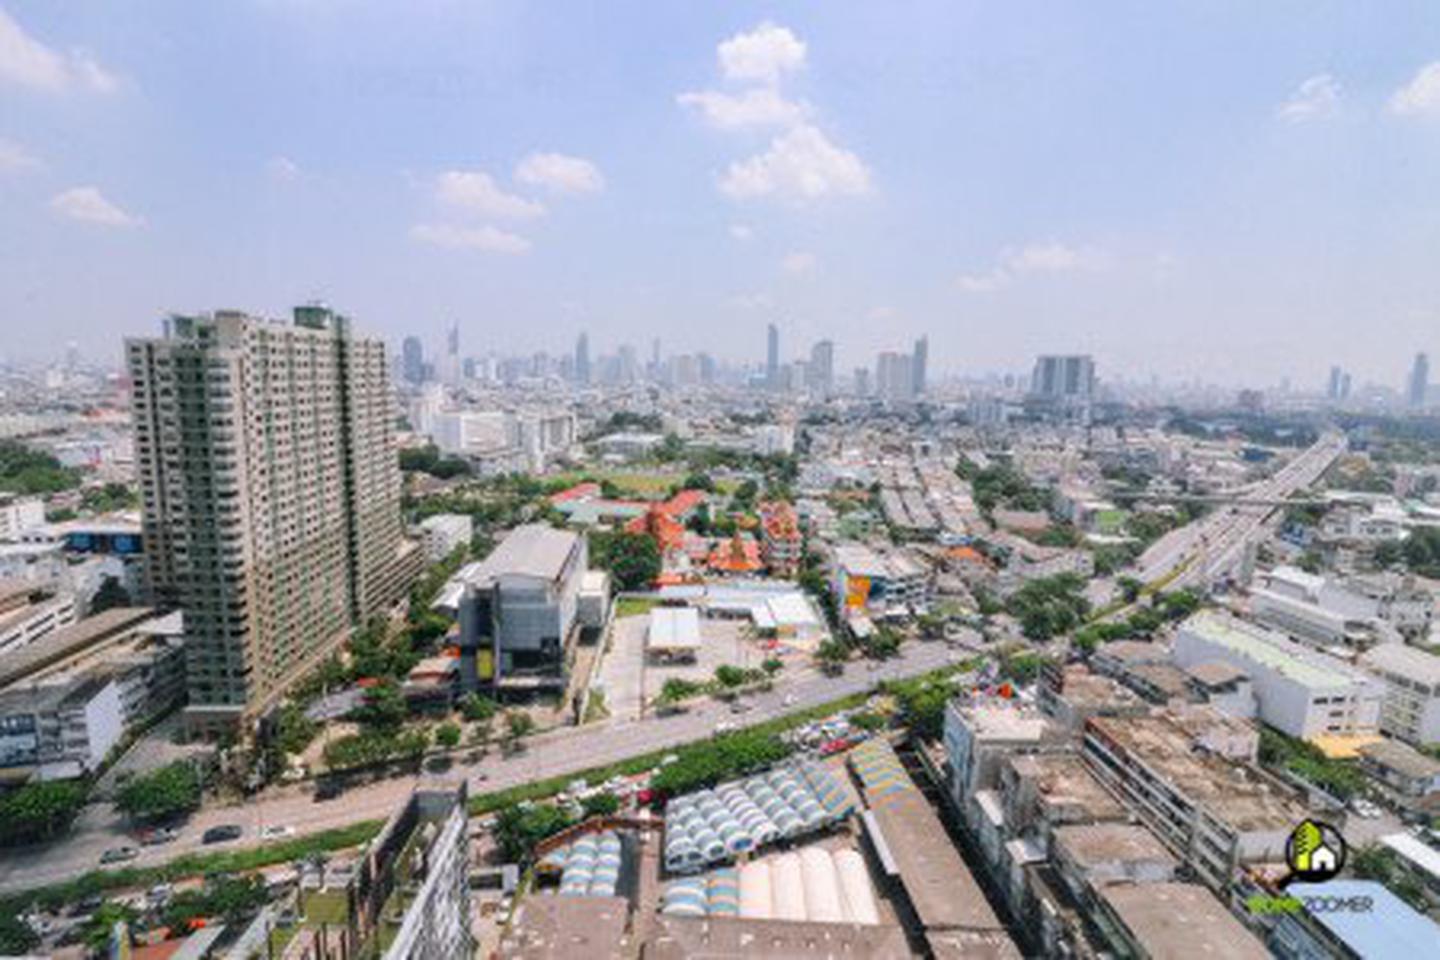 ขาย คอนโด ชั้นสูง วิวสวย เฟอร์SB ใหม่ครบ Bangkok Horizon รัชดา-ท่าพระ 32.80 ตรม. 1 ห้องนอน ราคาดีลพิเศษสุด ถูกสุด รูปเล็กที่ 10